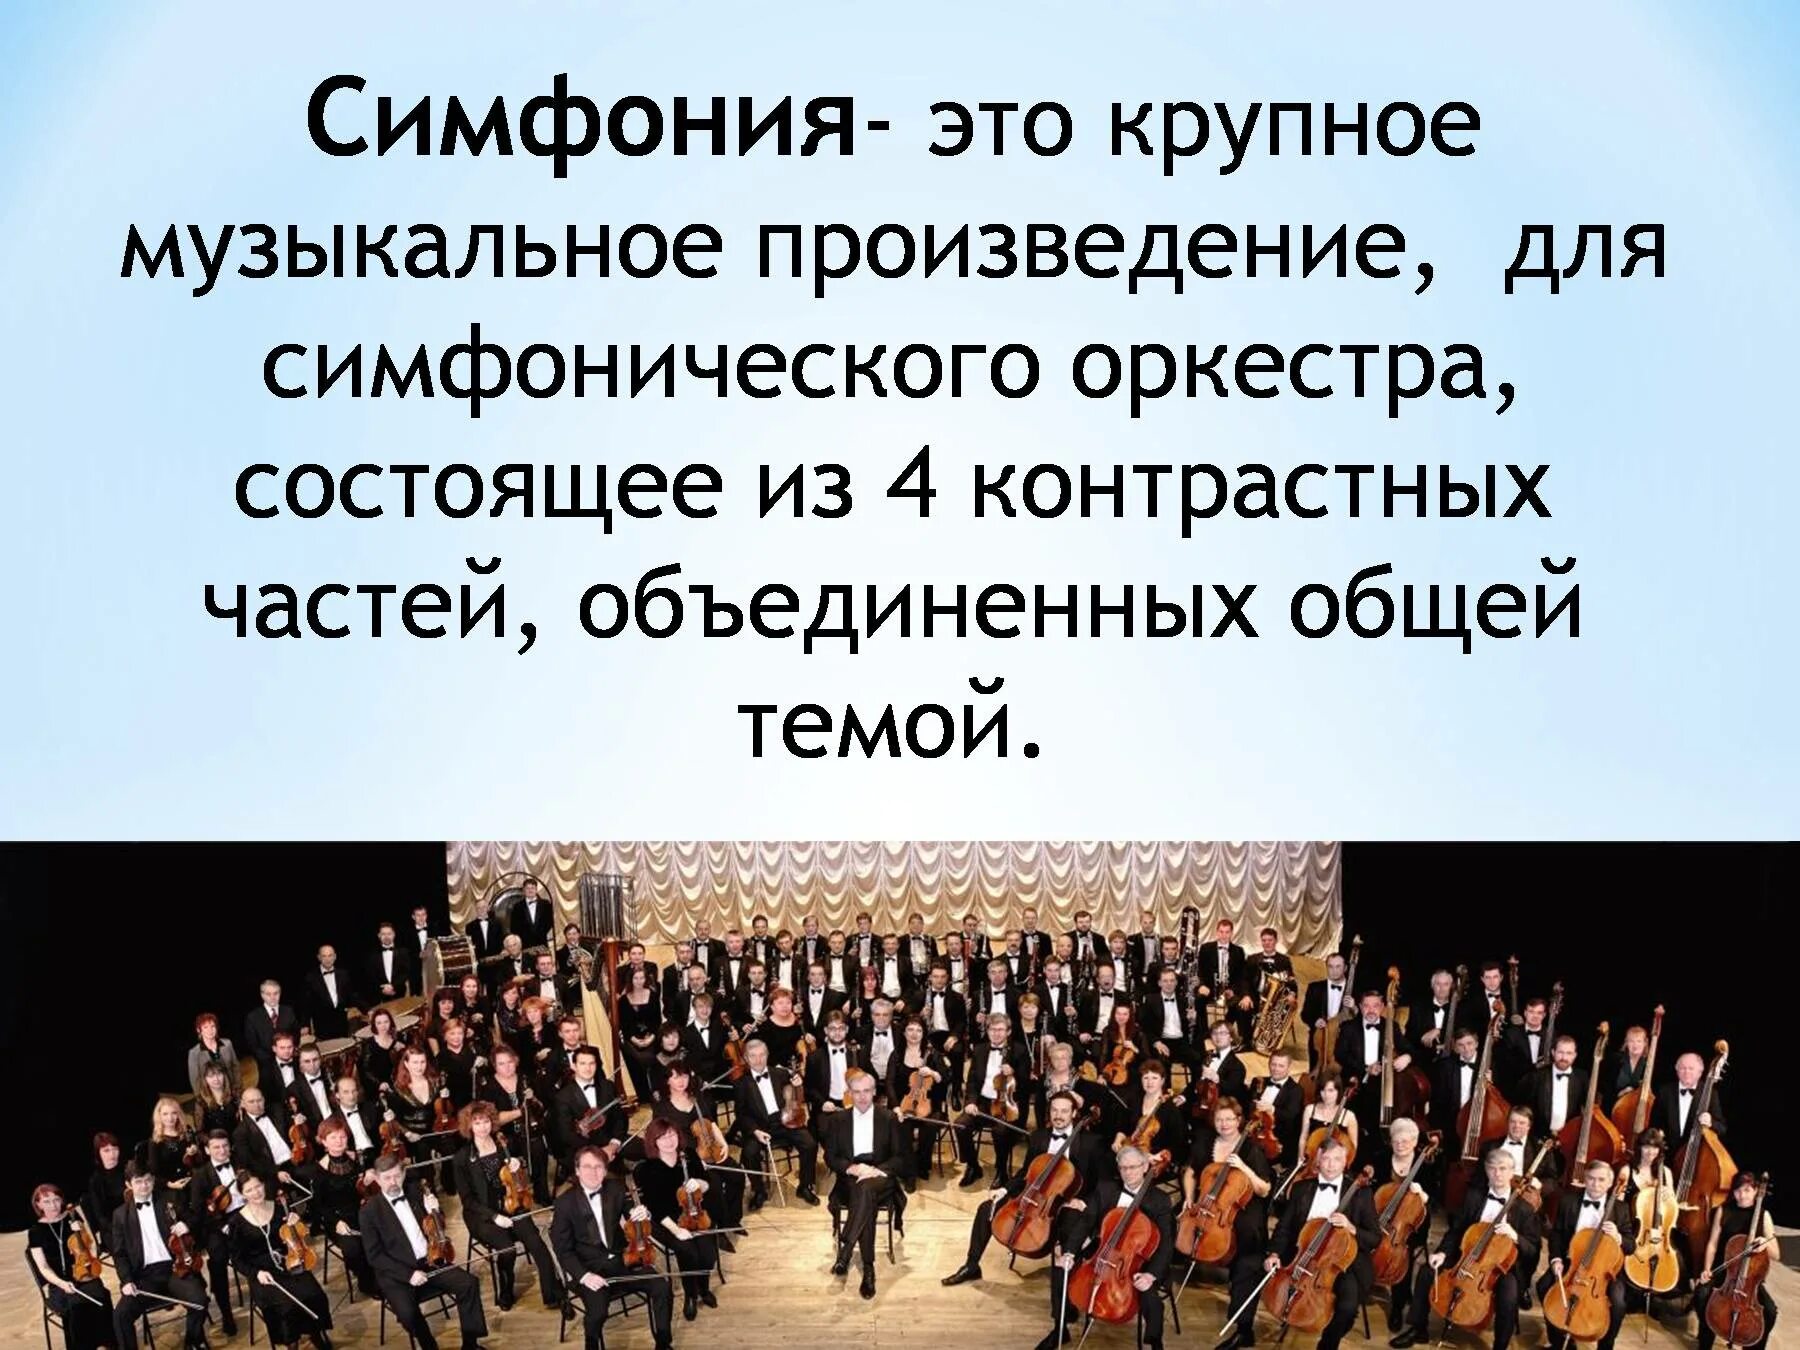 Симфония вокальное произведение. Симфония. Произведения для симфонического оркестра. Симфония-это музыкальное произведение. Музыкальное произведение для симфонического оркестра.